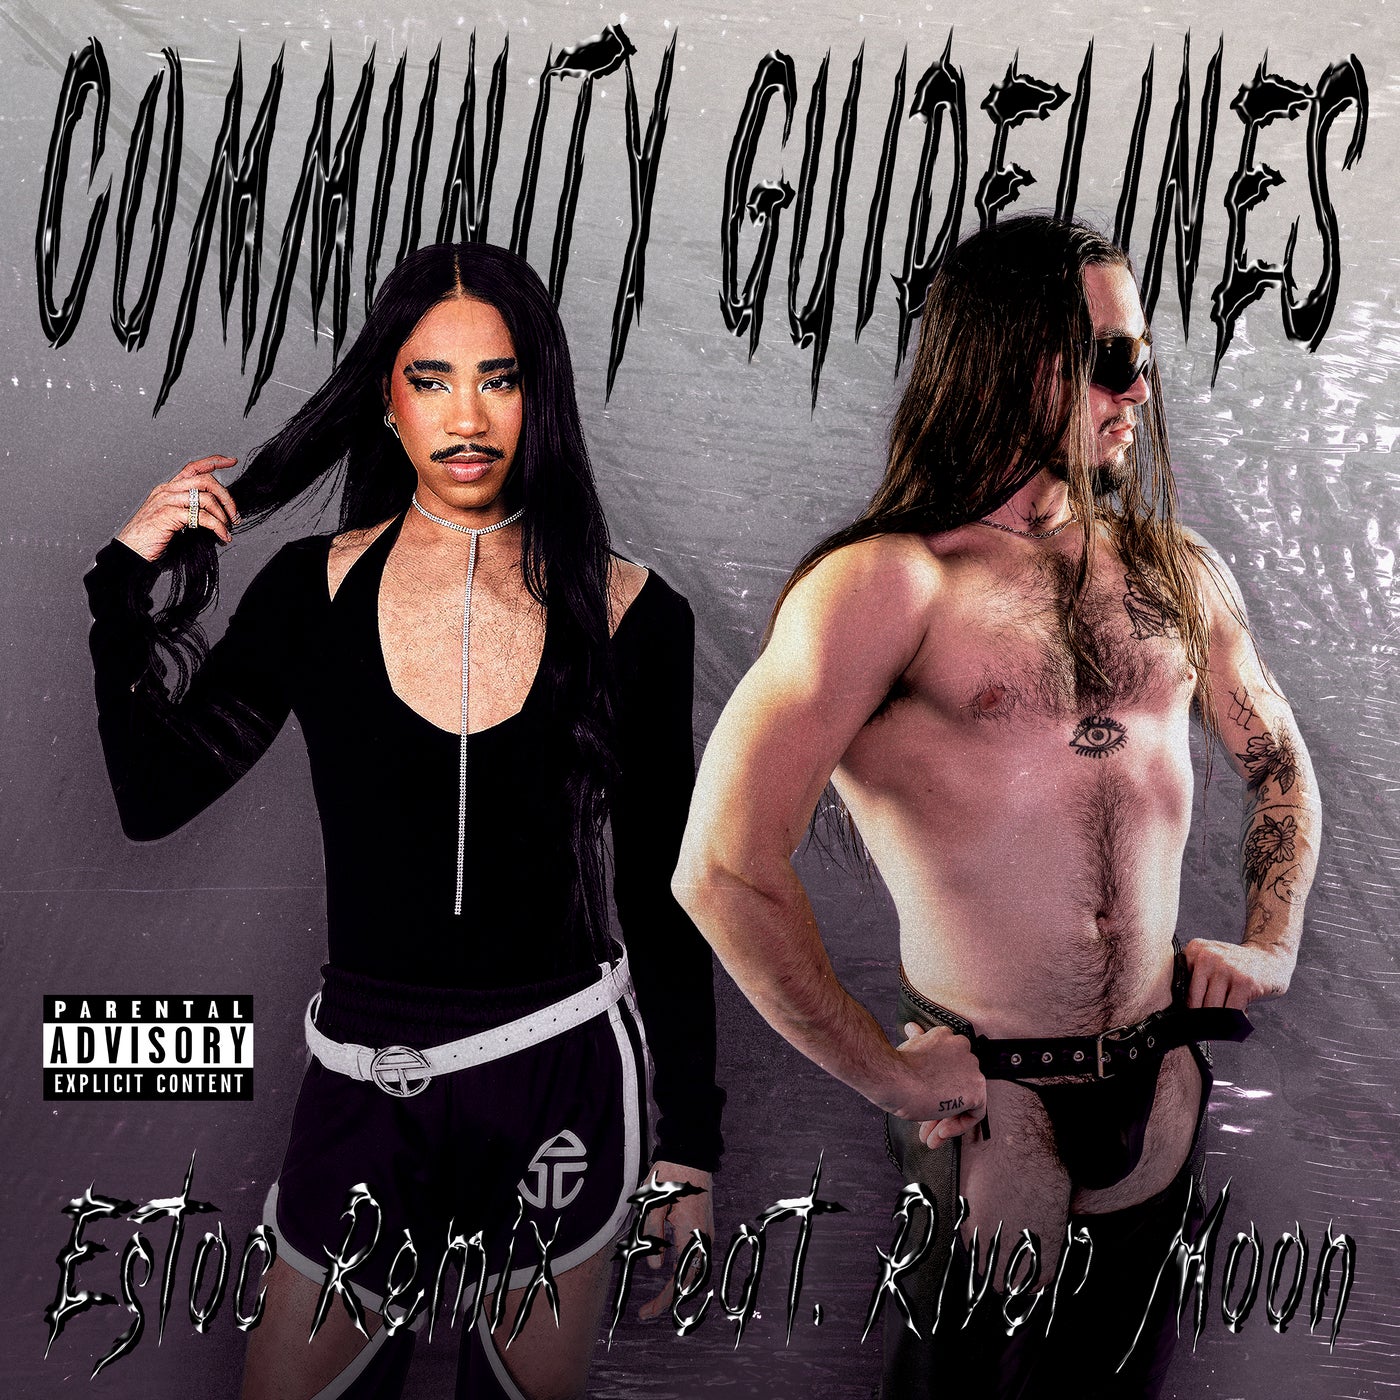 Community Guidelines (feat. River Moon) [Estoc Remix]